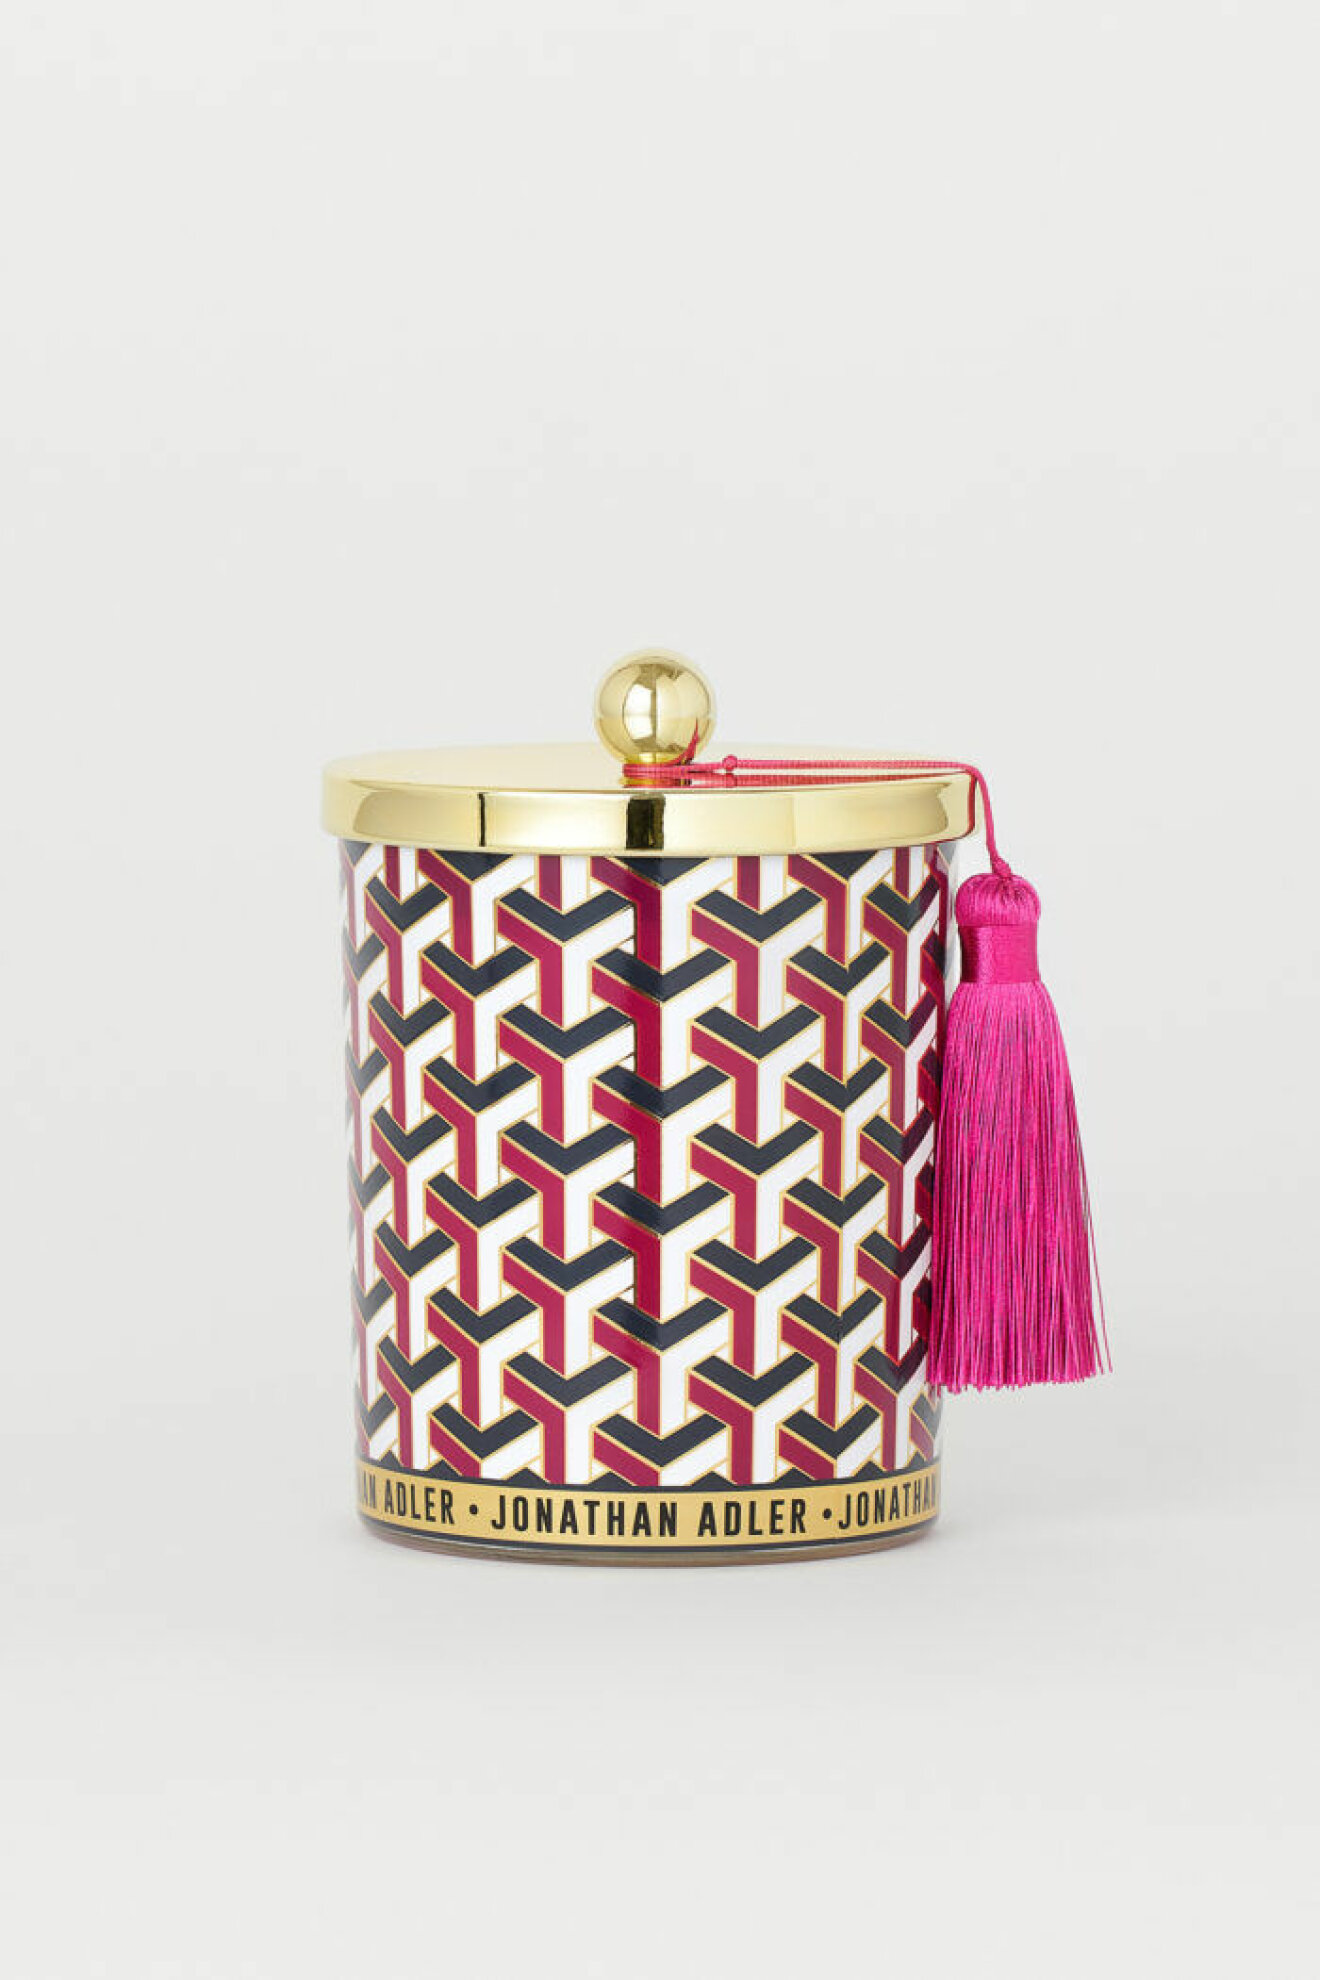 Prydnadsburk i guld, rosa, svart och vitt från Jonathan Adler x H&M